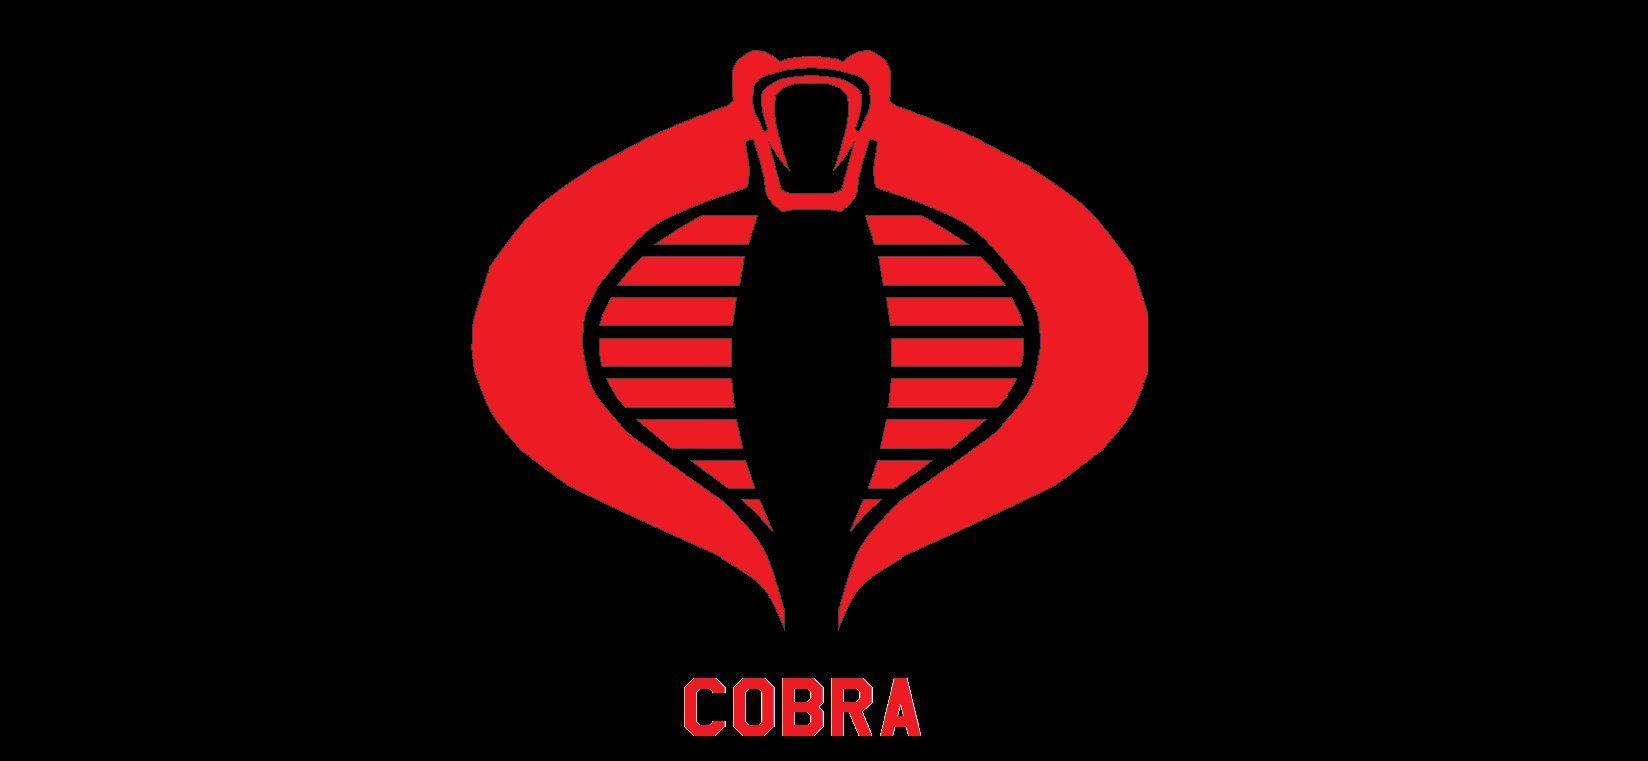 Cobra wallpaper